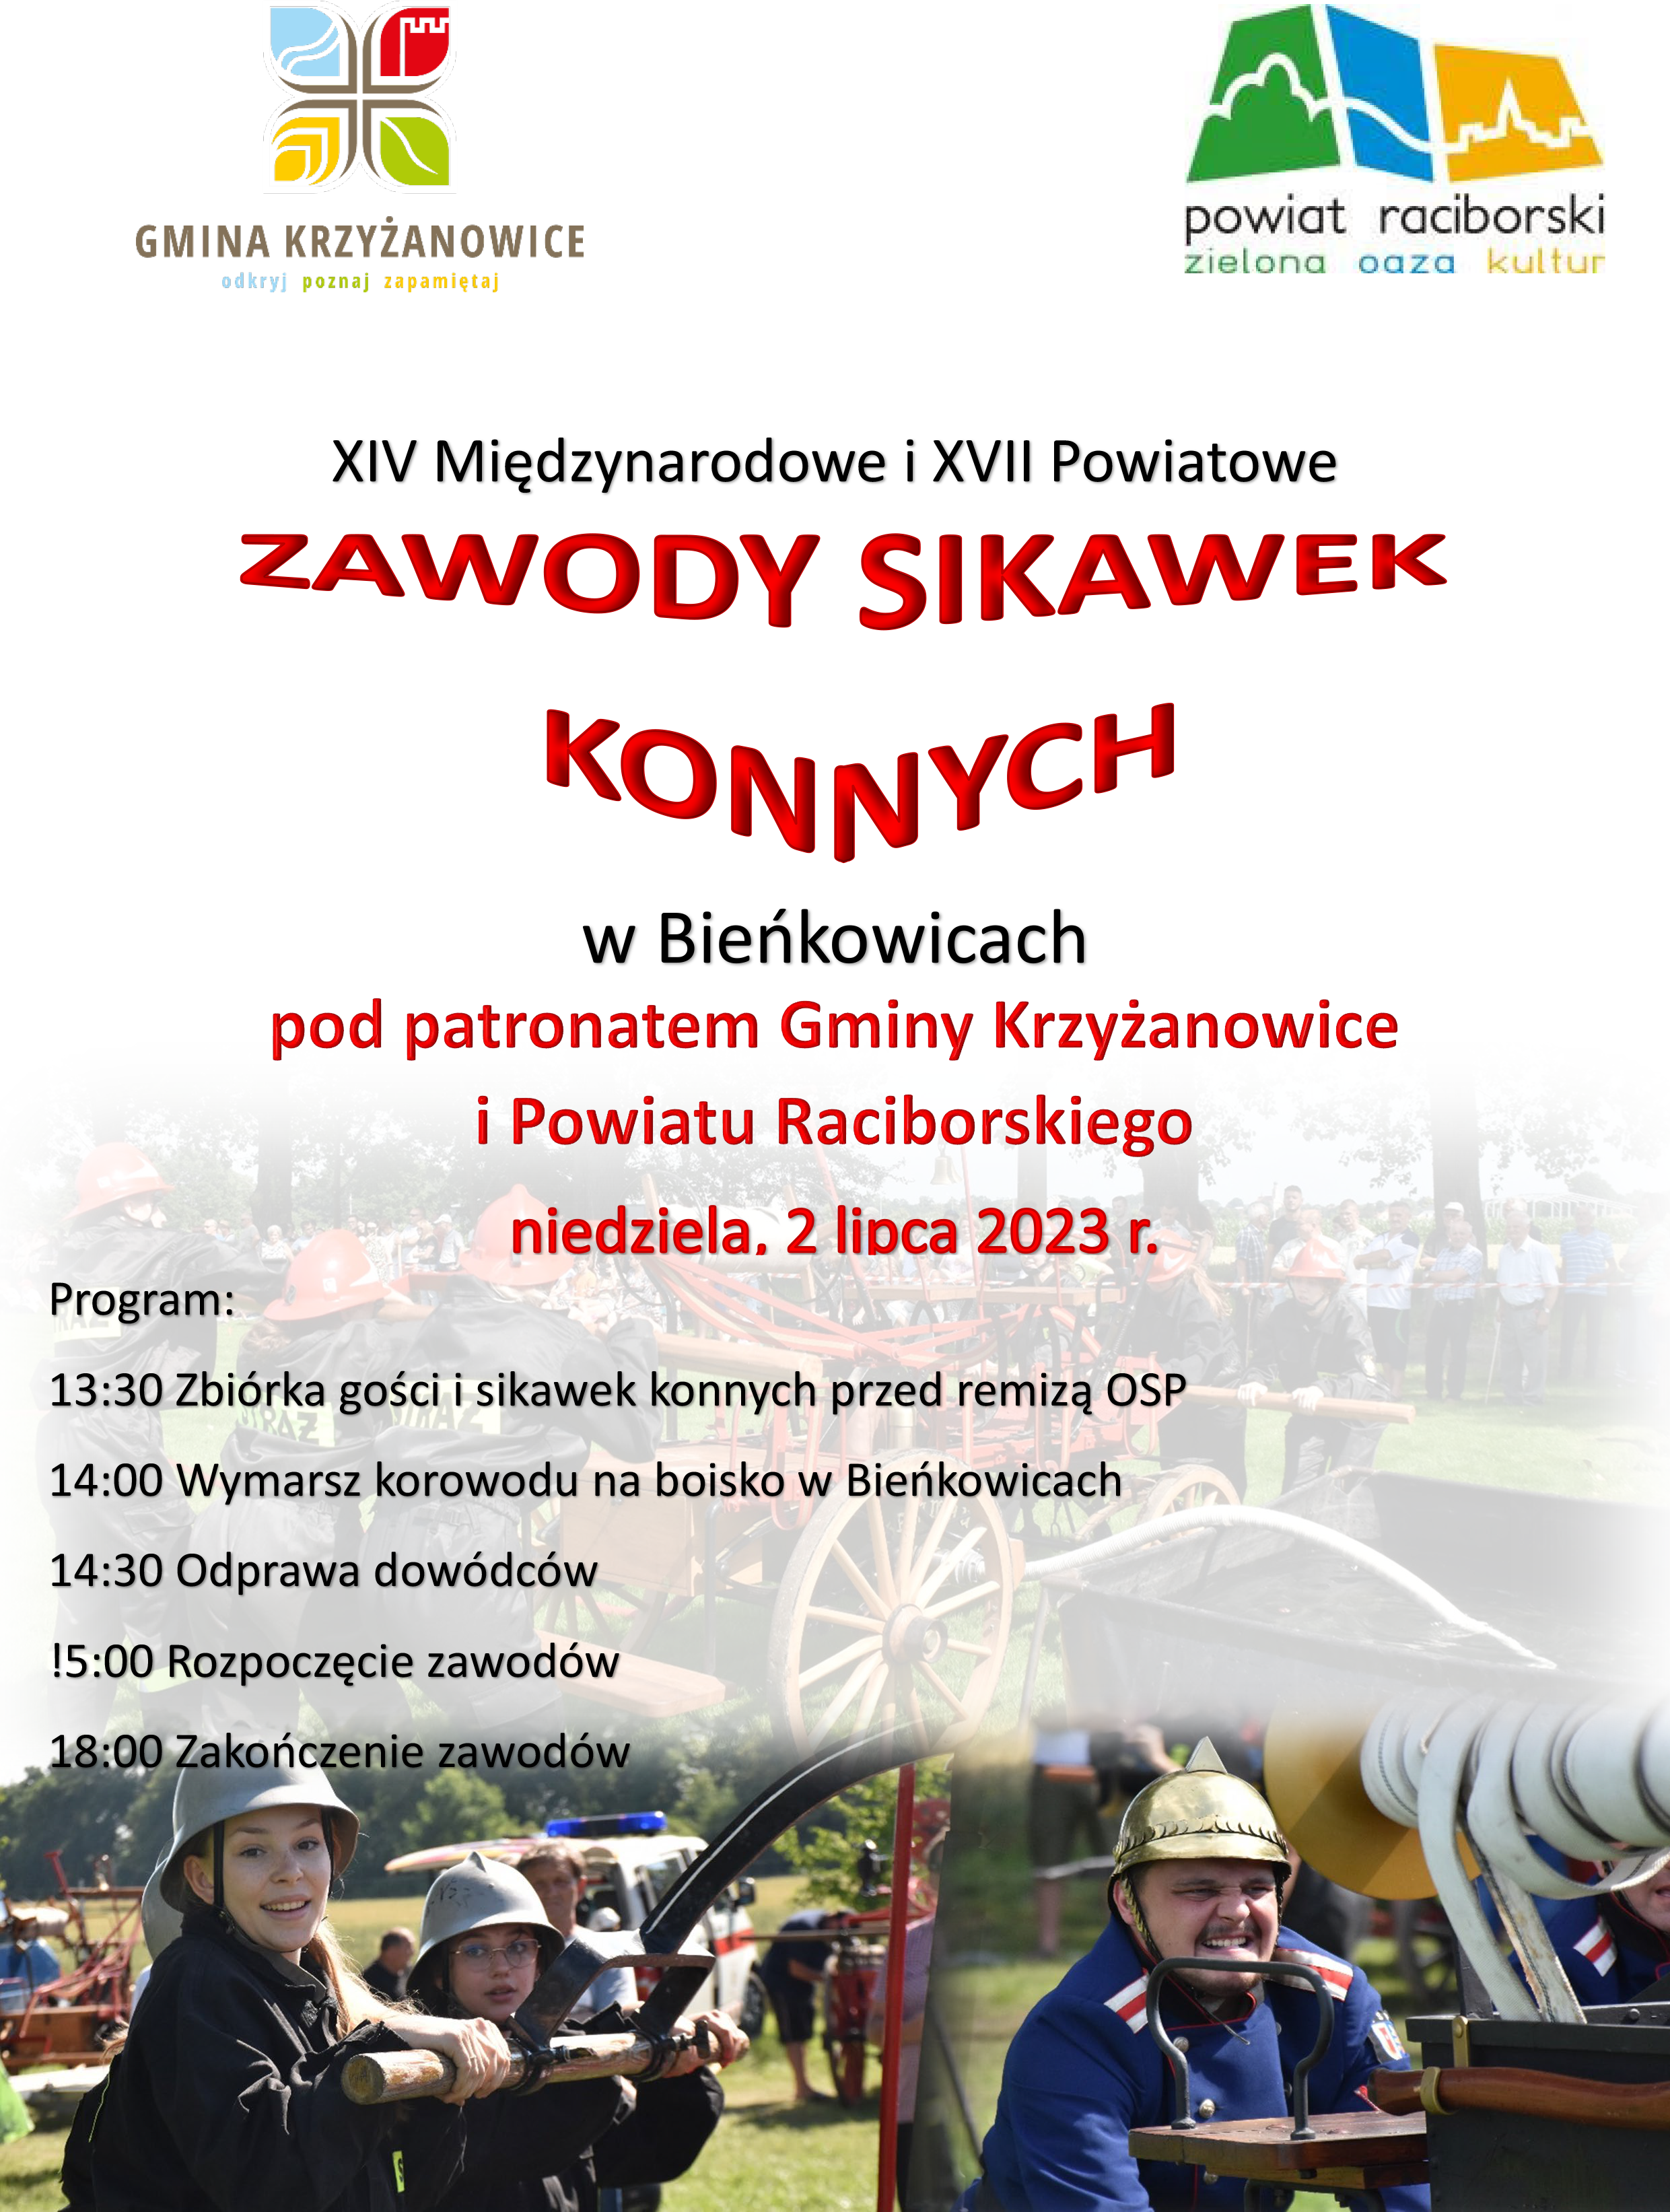 xiv_miedzynarodowe_i_xvii_powiatowe_zawody_sikawek_konnych_2023